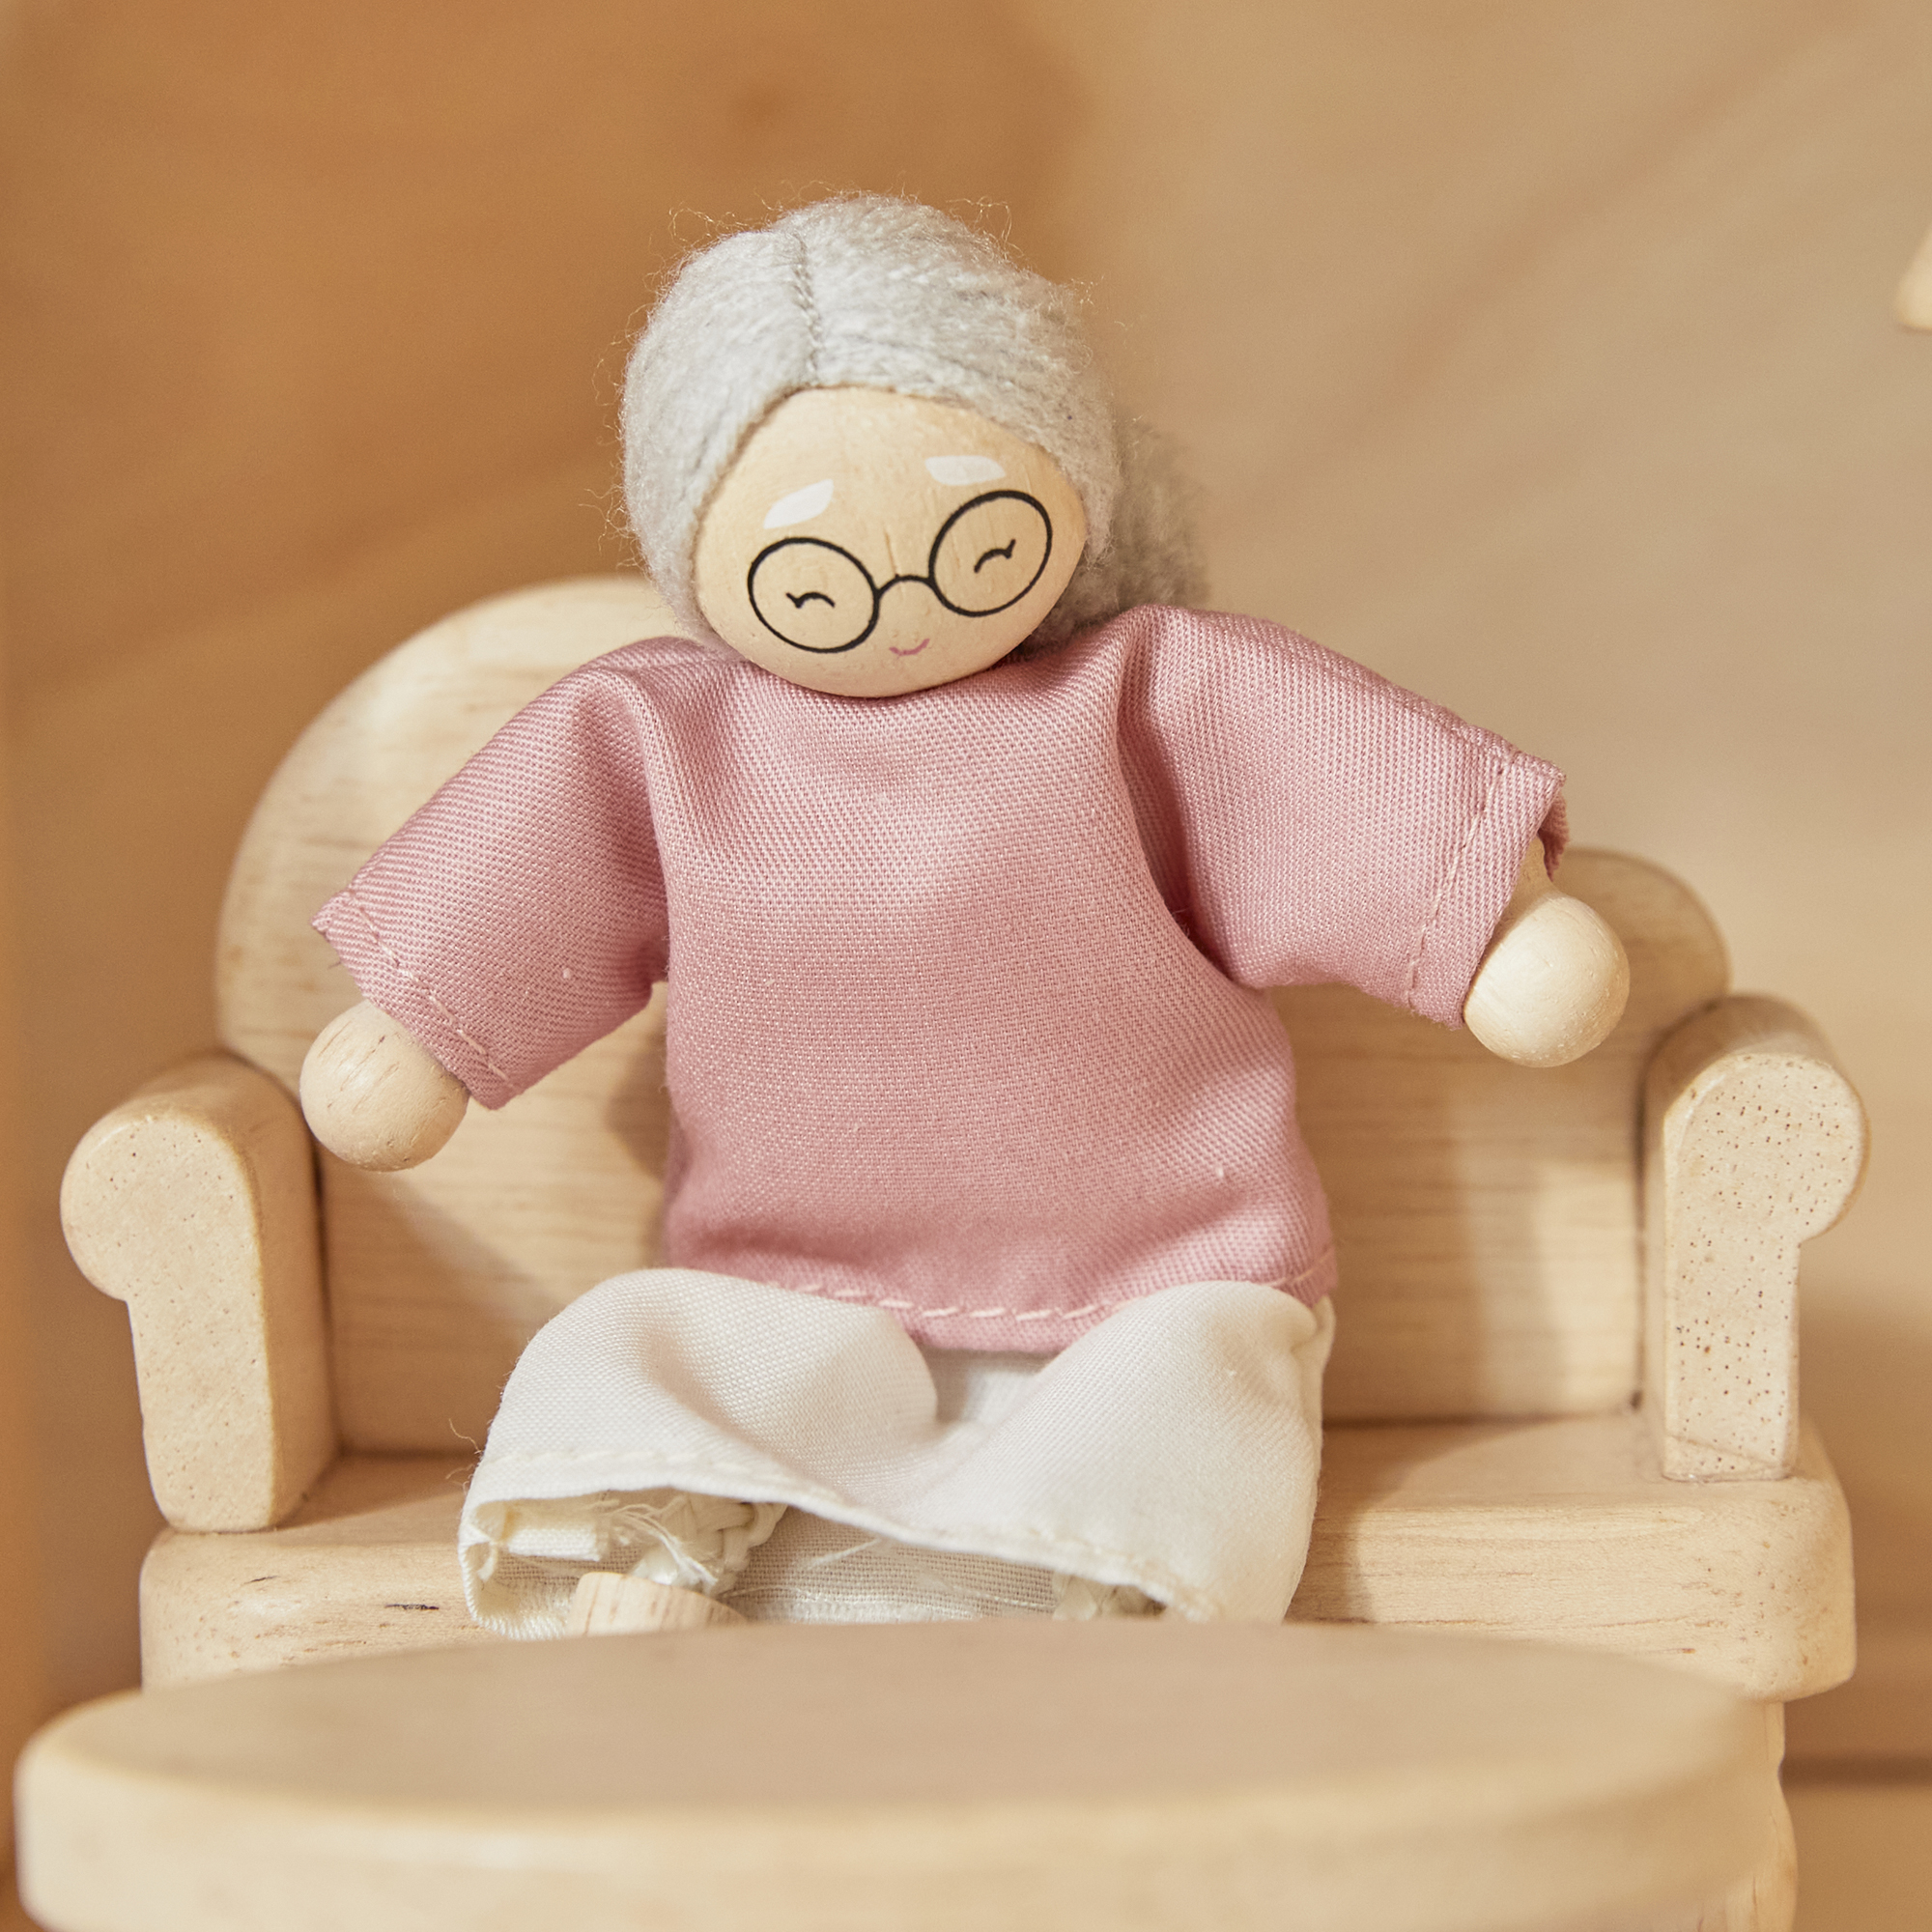 ของเล่นไม้  Grandmother Dollhouse Figure - Fair Skin Tone ตุ๊กตาคุณย่าคุณยาย-ผิวขาว เสริมพัฒนาการ สำหรับเด็กอายุ 3 ปี ขึ้นไป